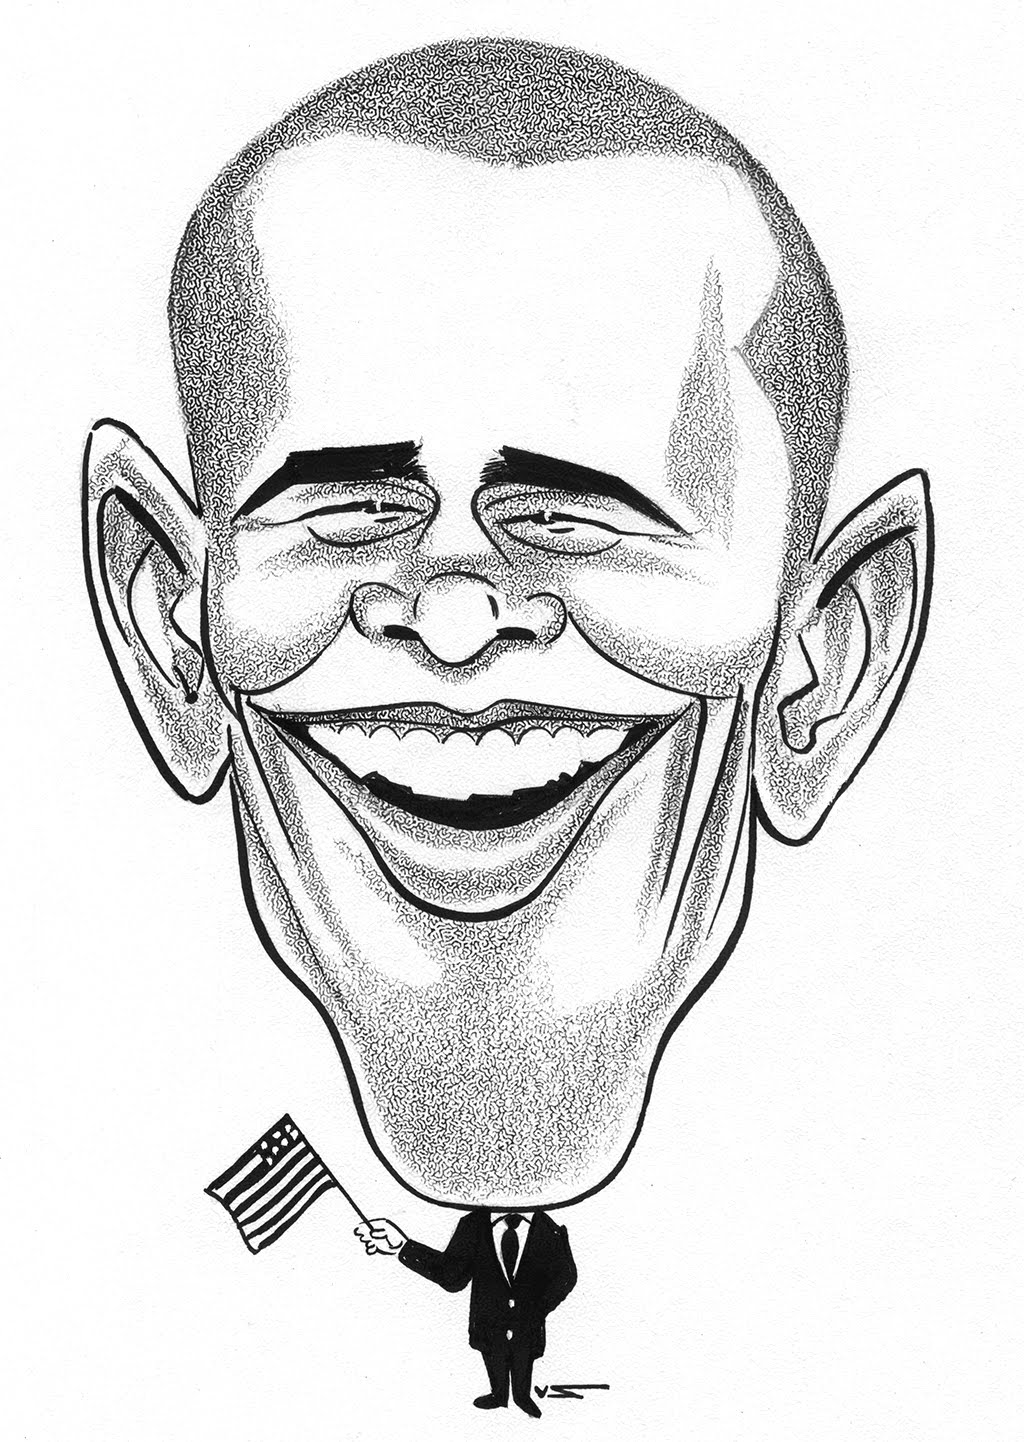 Сатирический образ шарж. Сатирический портрет Обама. Дружеский шарж легкий Барак Обама. Мишустин сатирический портрет.